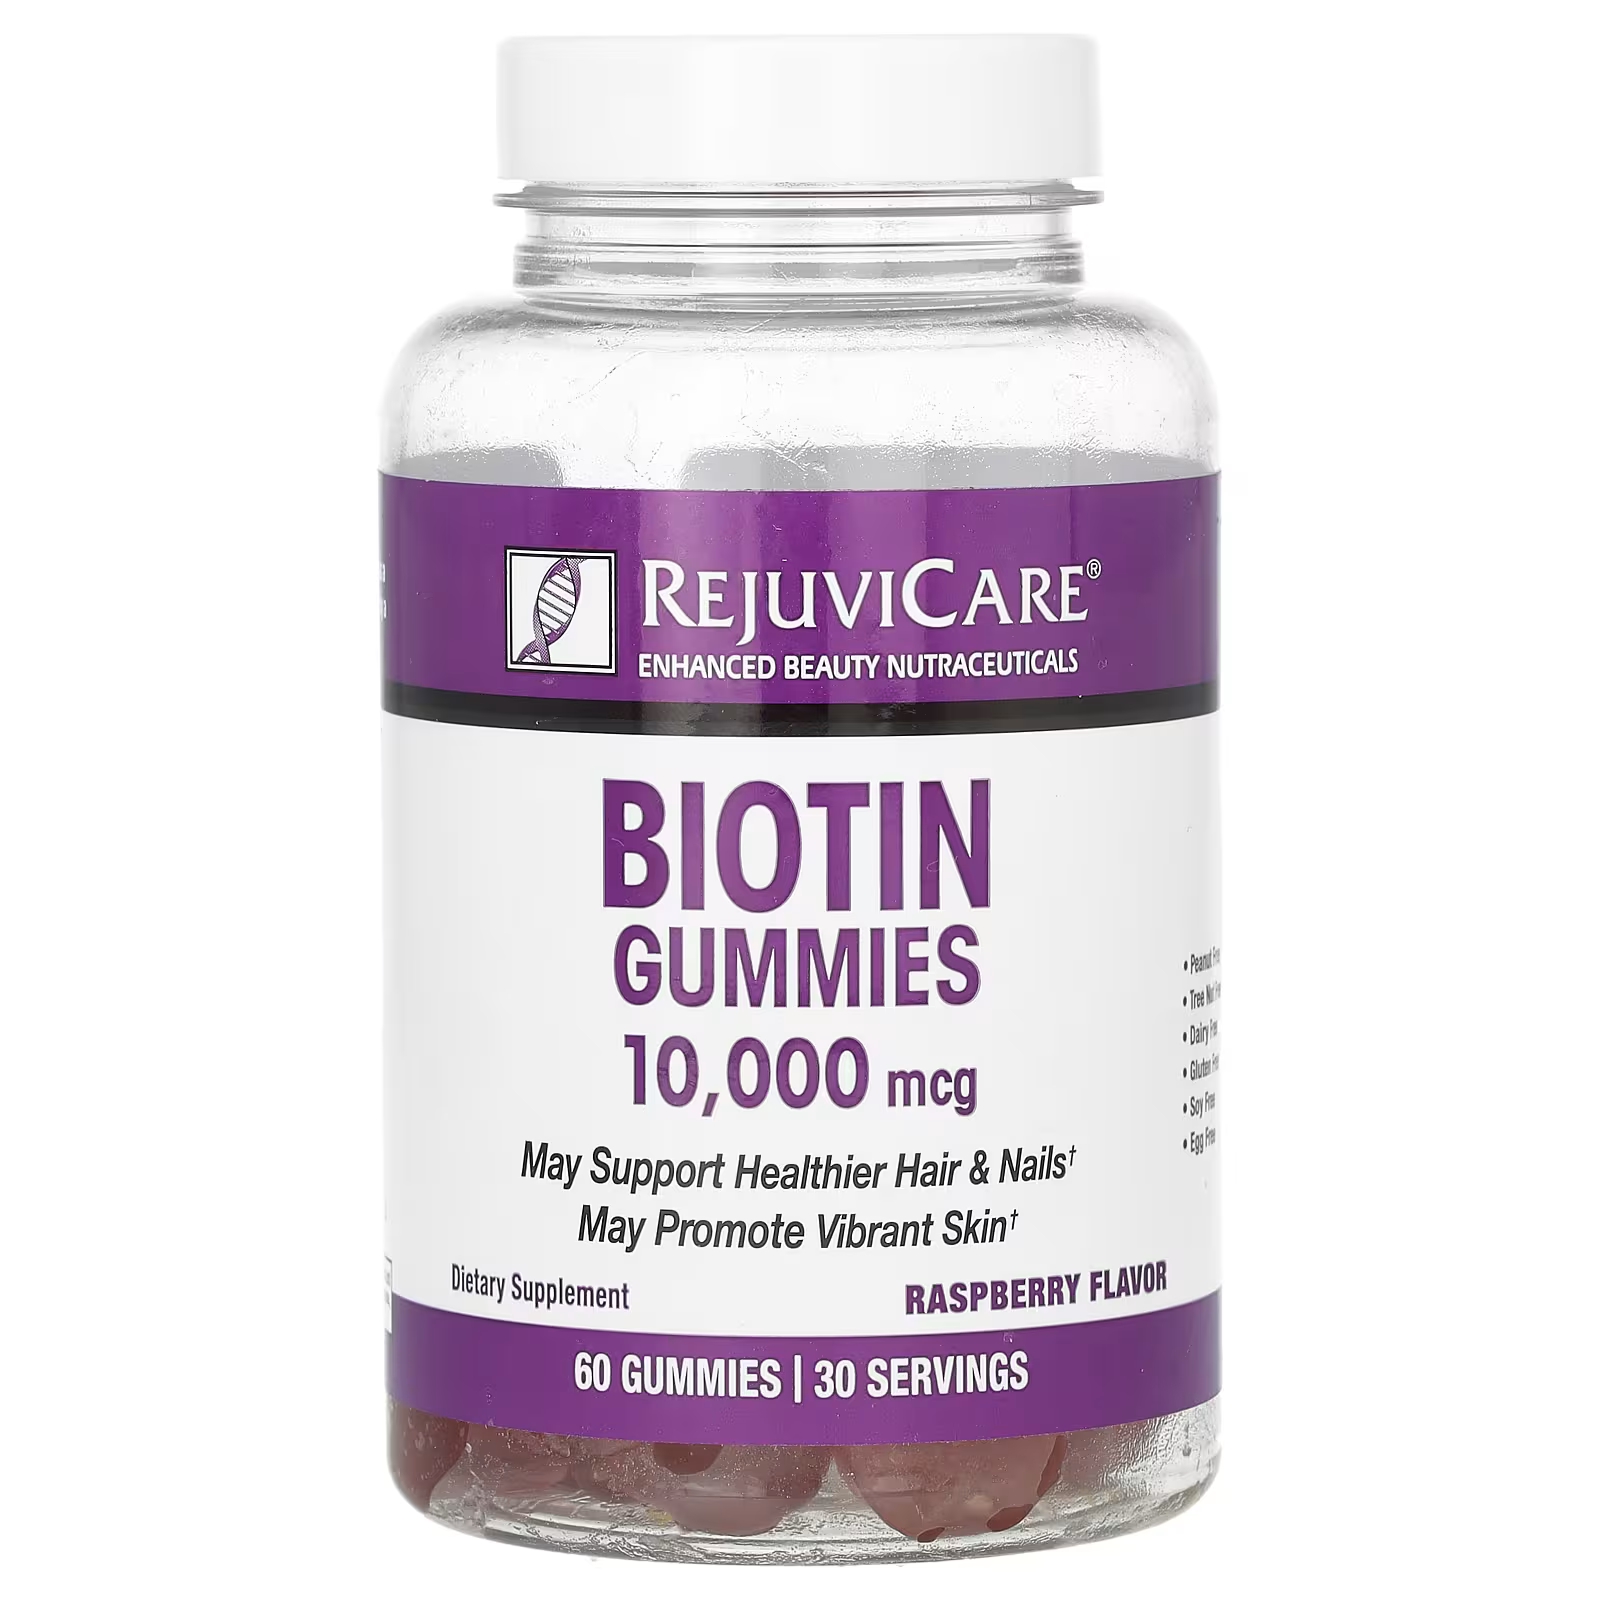 Пищевая добавка Rejuvicare Biotin Gummies Raspberry, 60 жевательных таблеток pacifica beauty gummies без фильтра для кожи арбузный вкус 60 жевательных таблеток